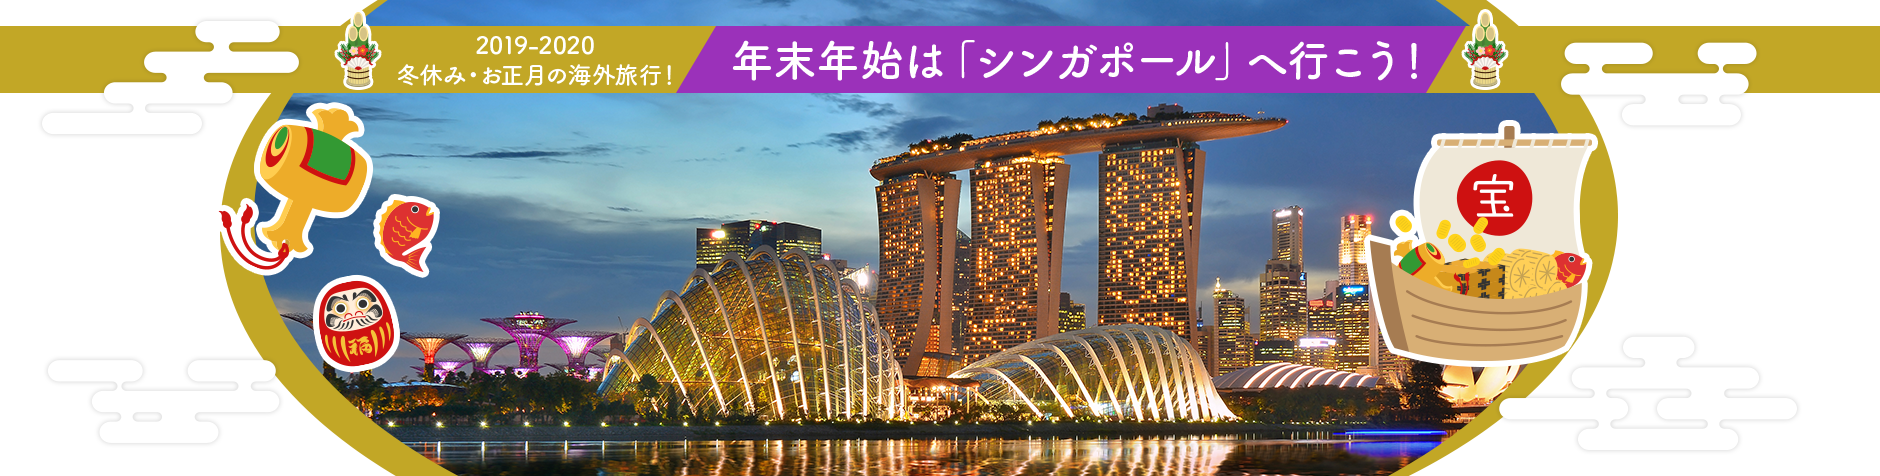 年末年始の海外旅行 冬休み お正月は シンガポール へ行こう 海外旅行 海外ツアー 航空券ならトラベルスタンダードジャパン